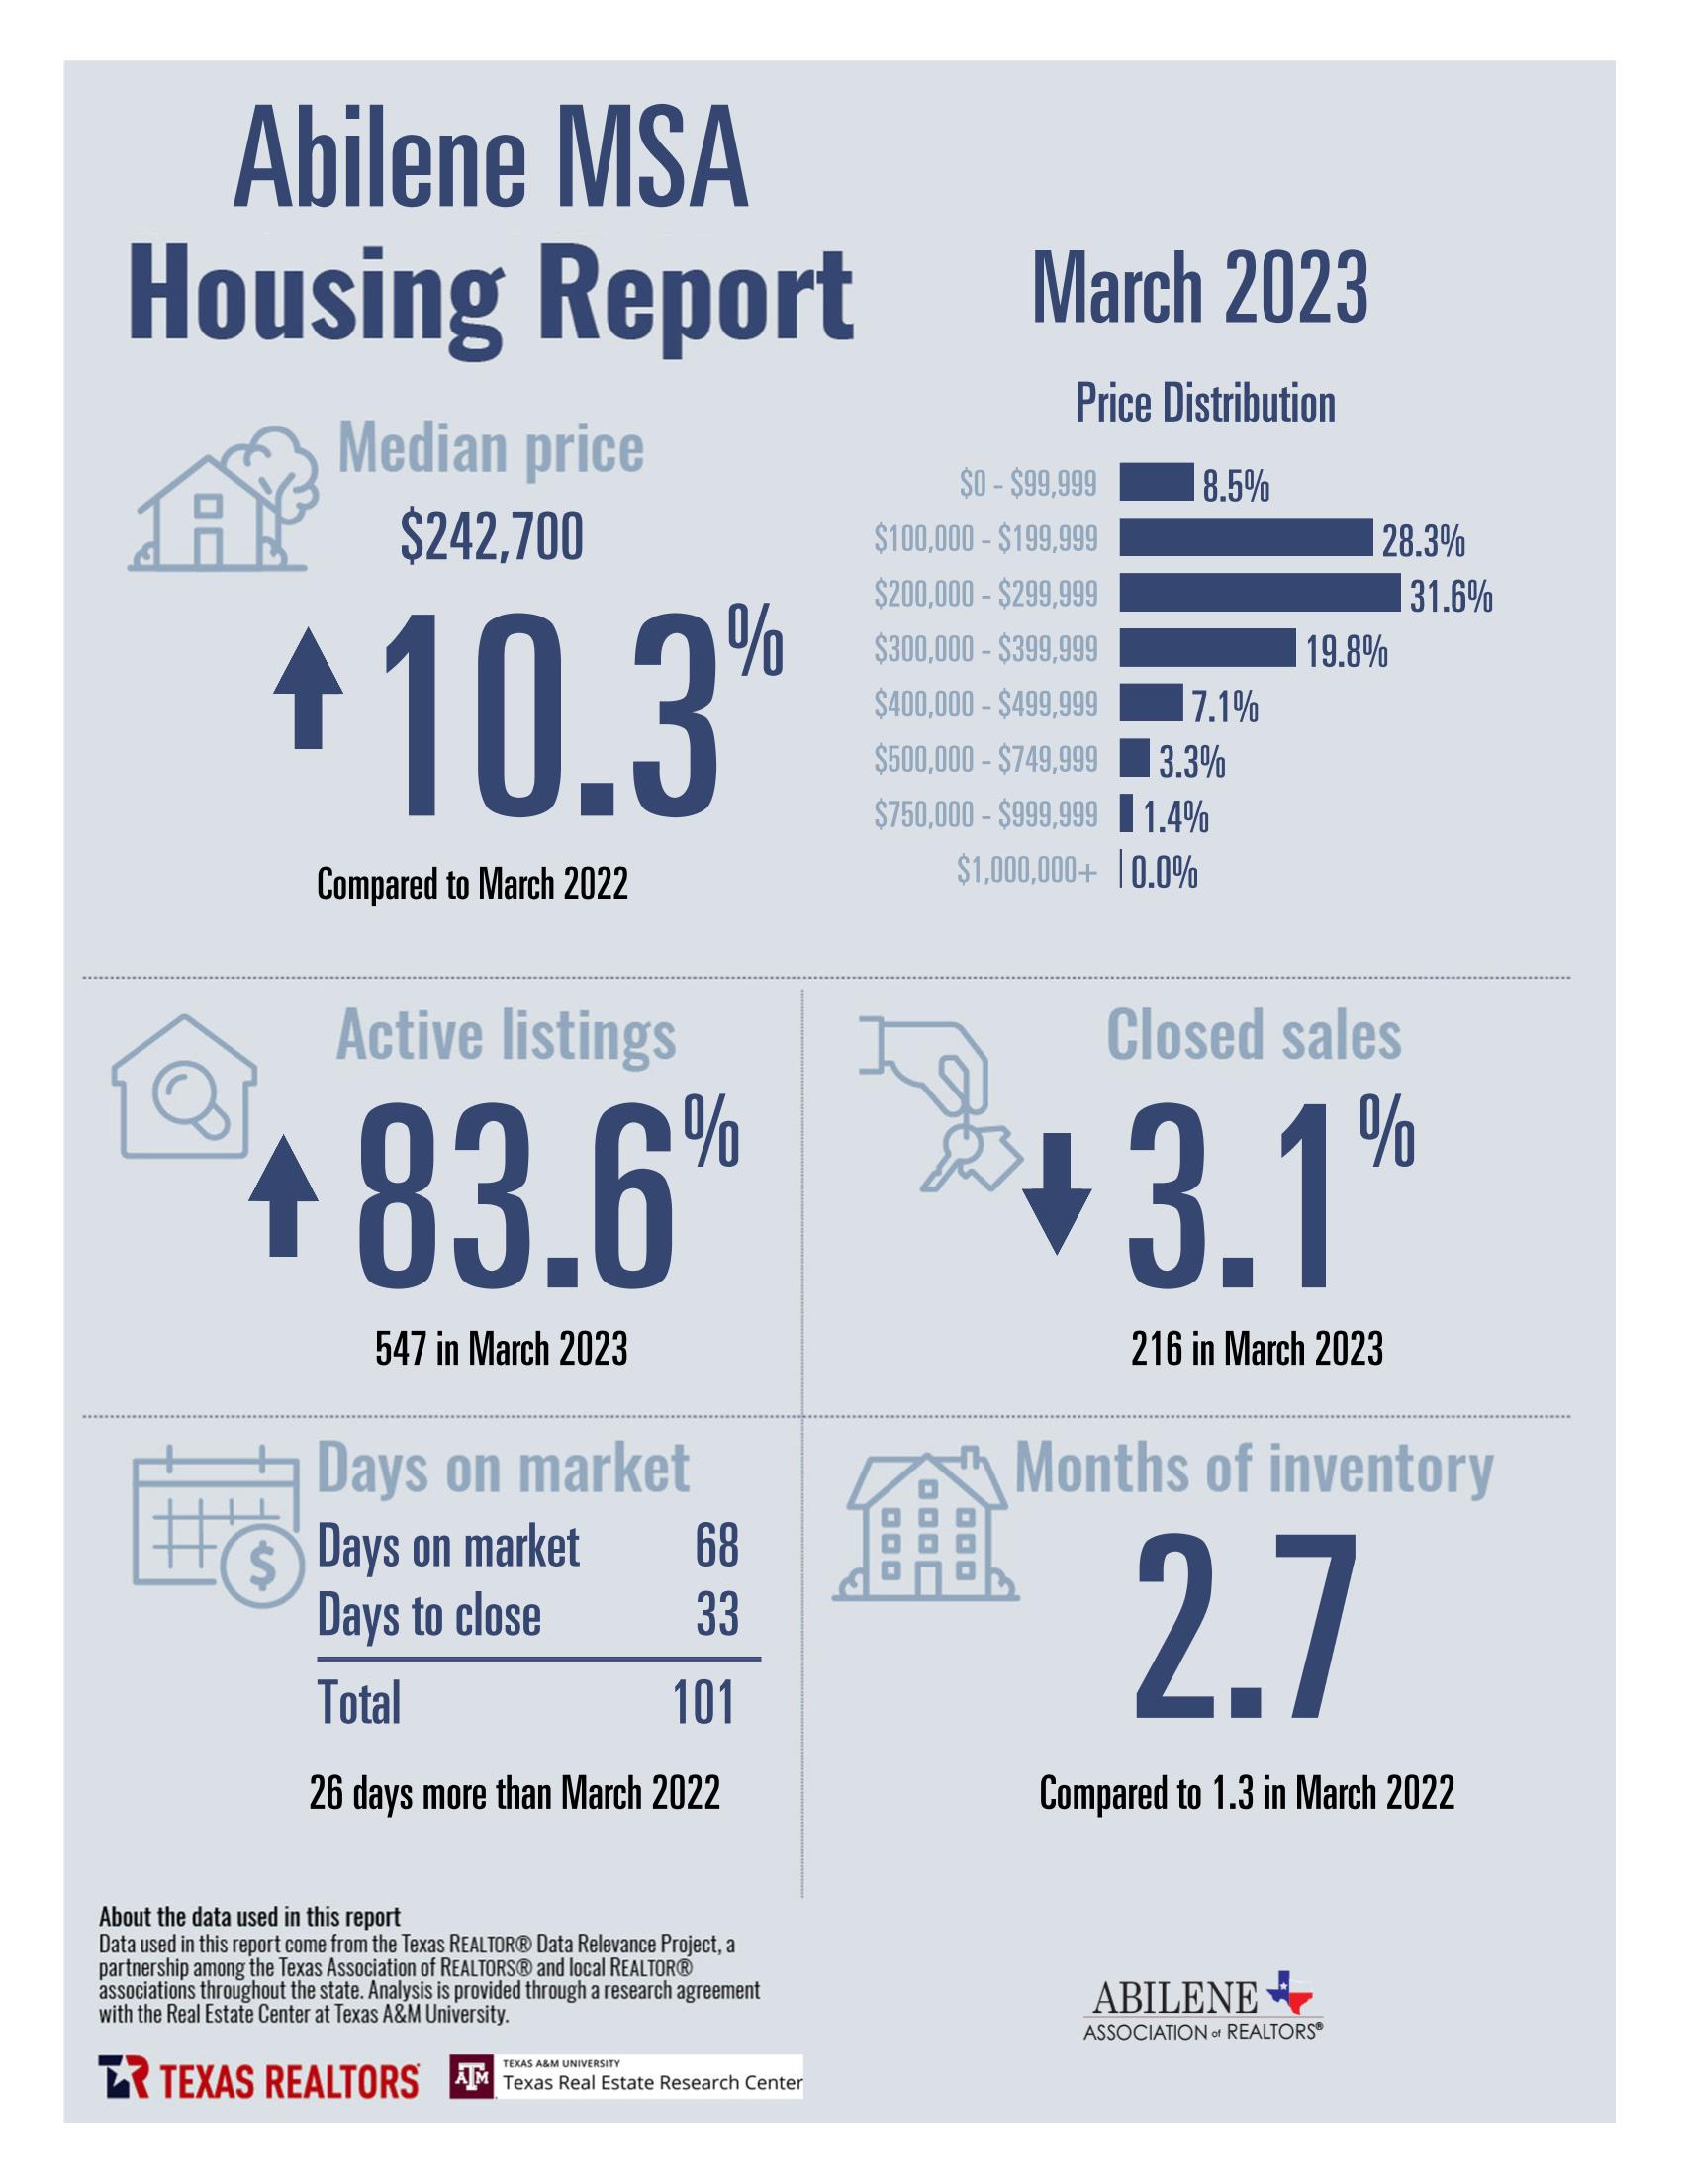 March 2023 Housing Statistics for Abilene, TX